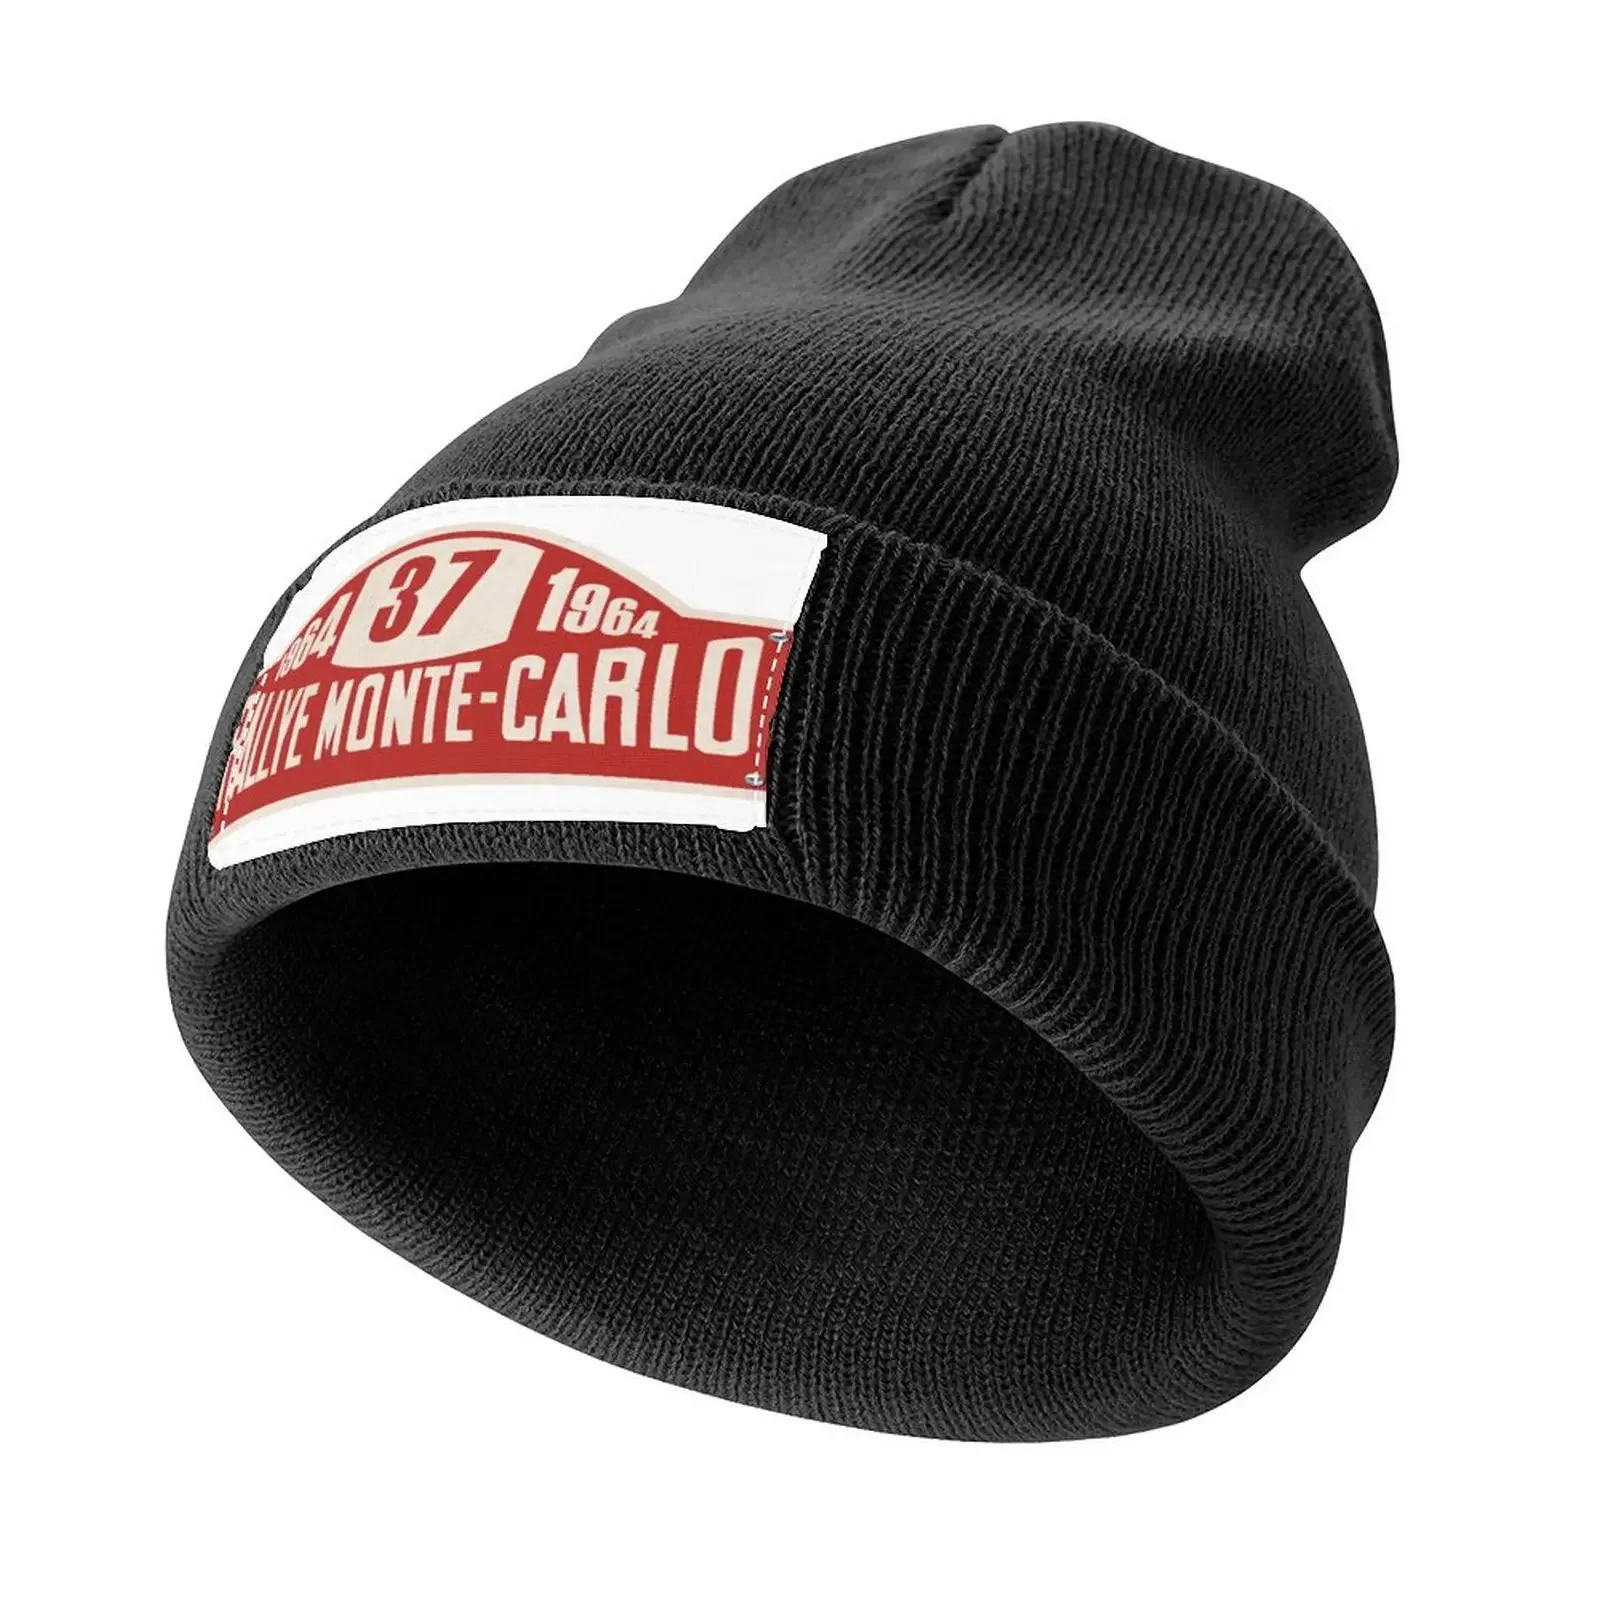 

Ралли Монте-Карло 1964, вязаная шапка с надписью, Кепка для гольфа, чайная шапка, новая в шапке, Термальный козырек, женские шапки 2024, мужские